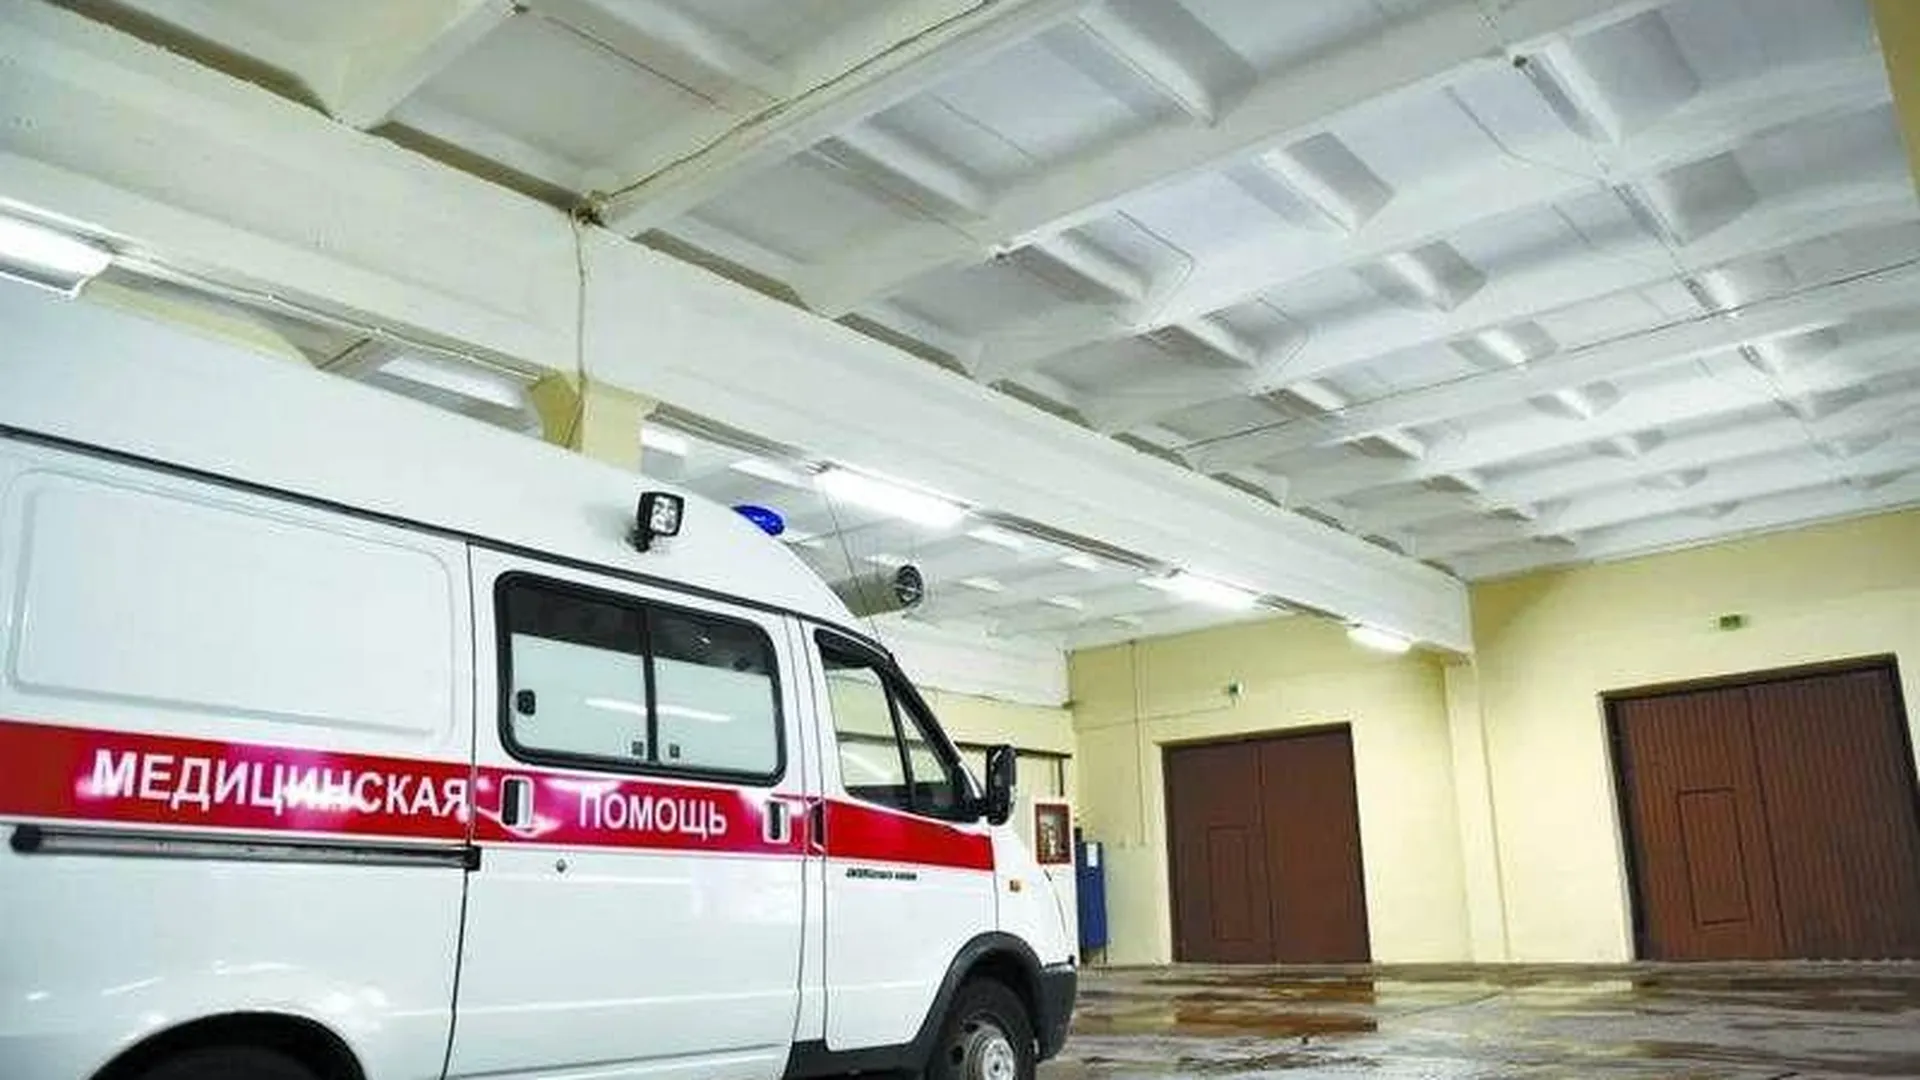 Тринадцать постов и подстанций скорой помощи отремонтировали за месяц в Подмосковье